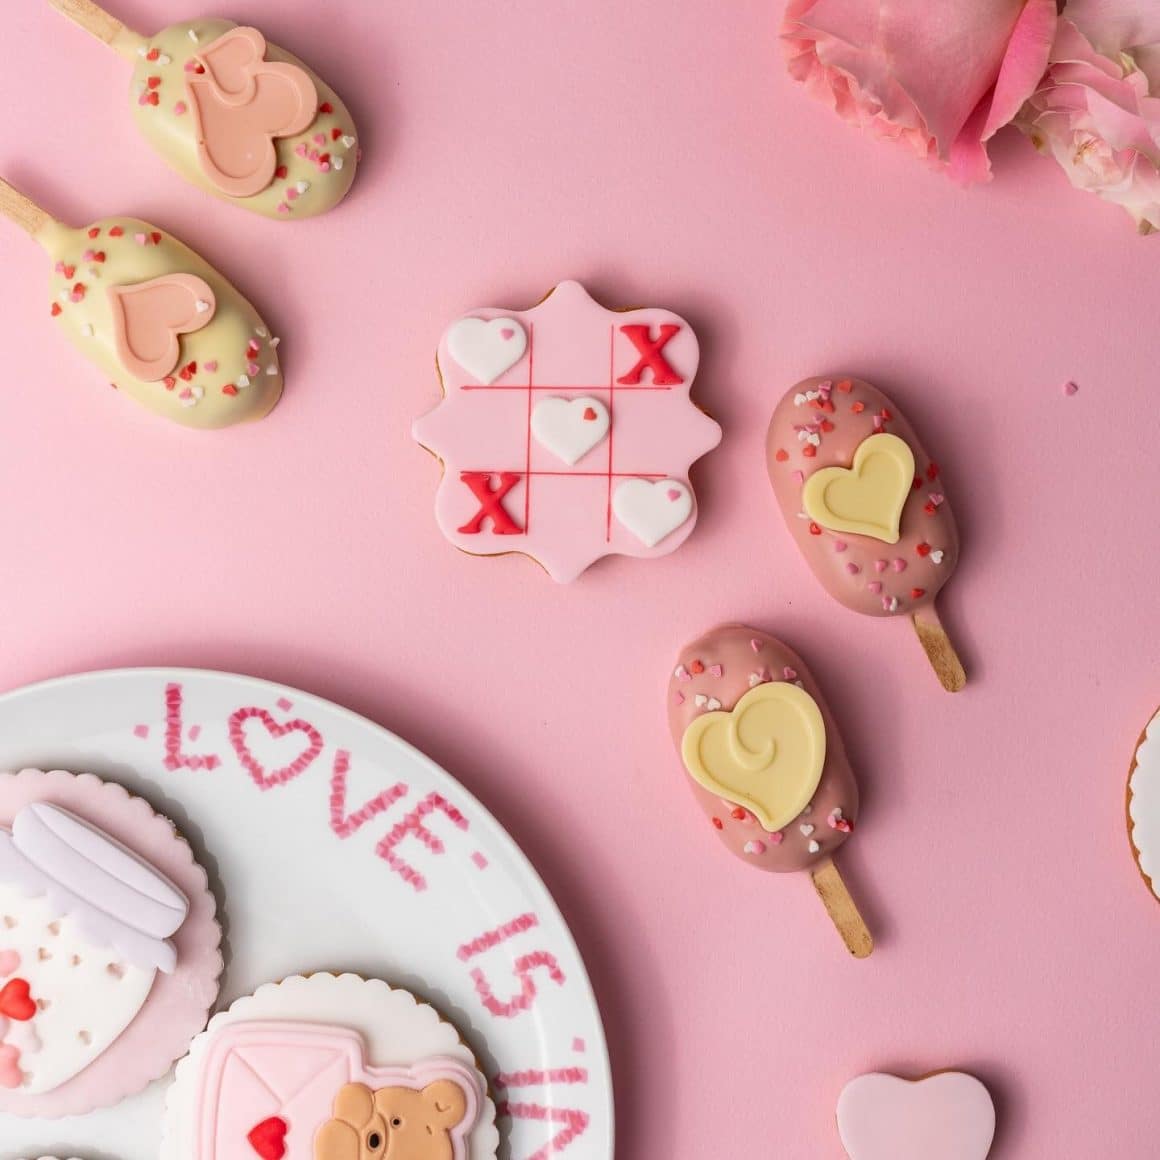 biscuiti de valentines day, ornati cu roz, de la Mara Mura, de unde sa-i oferi ceva dulce de Ziua Îndrăgostiților